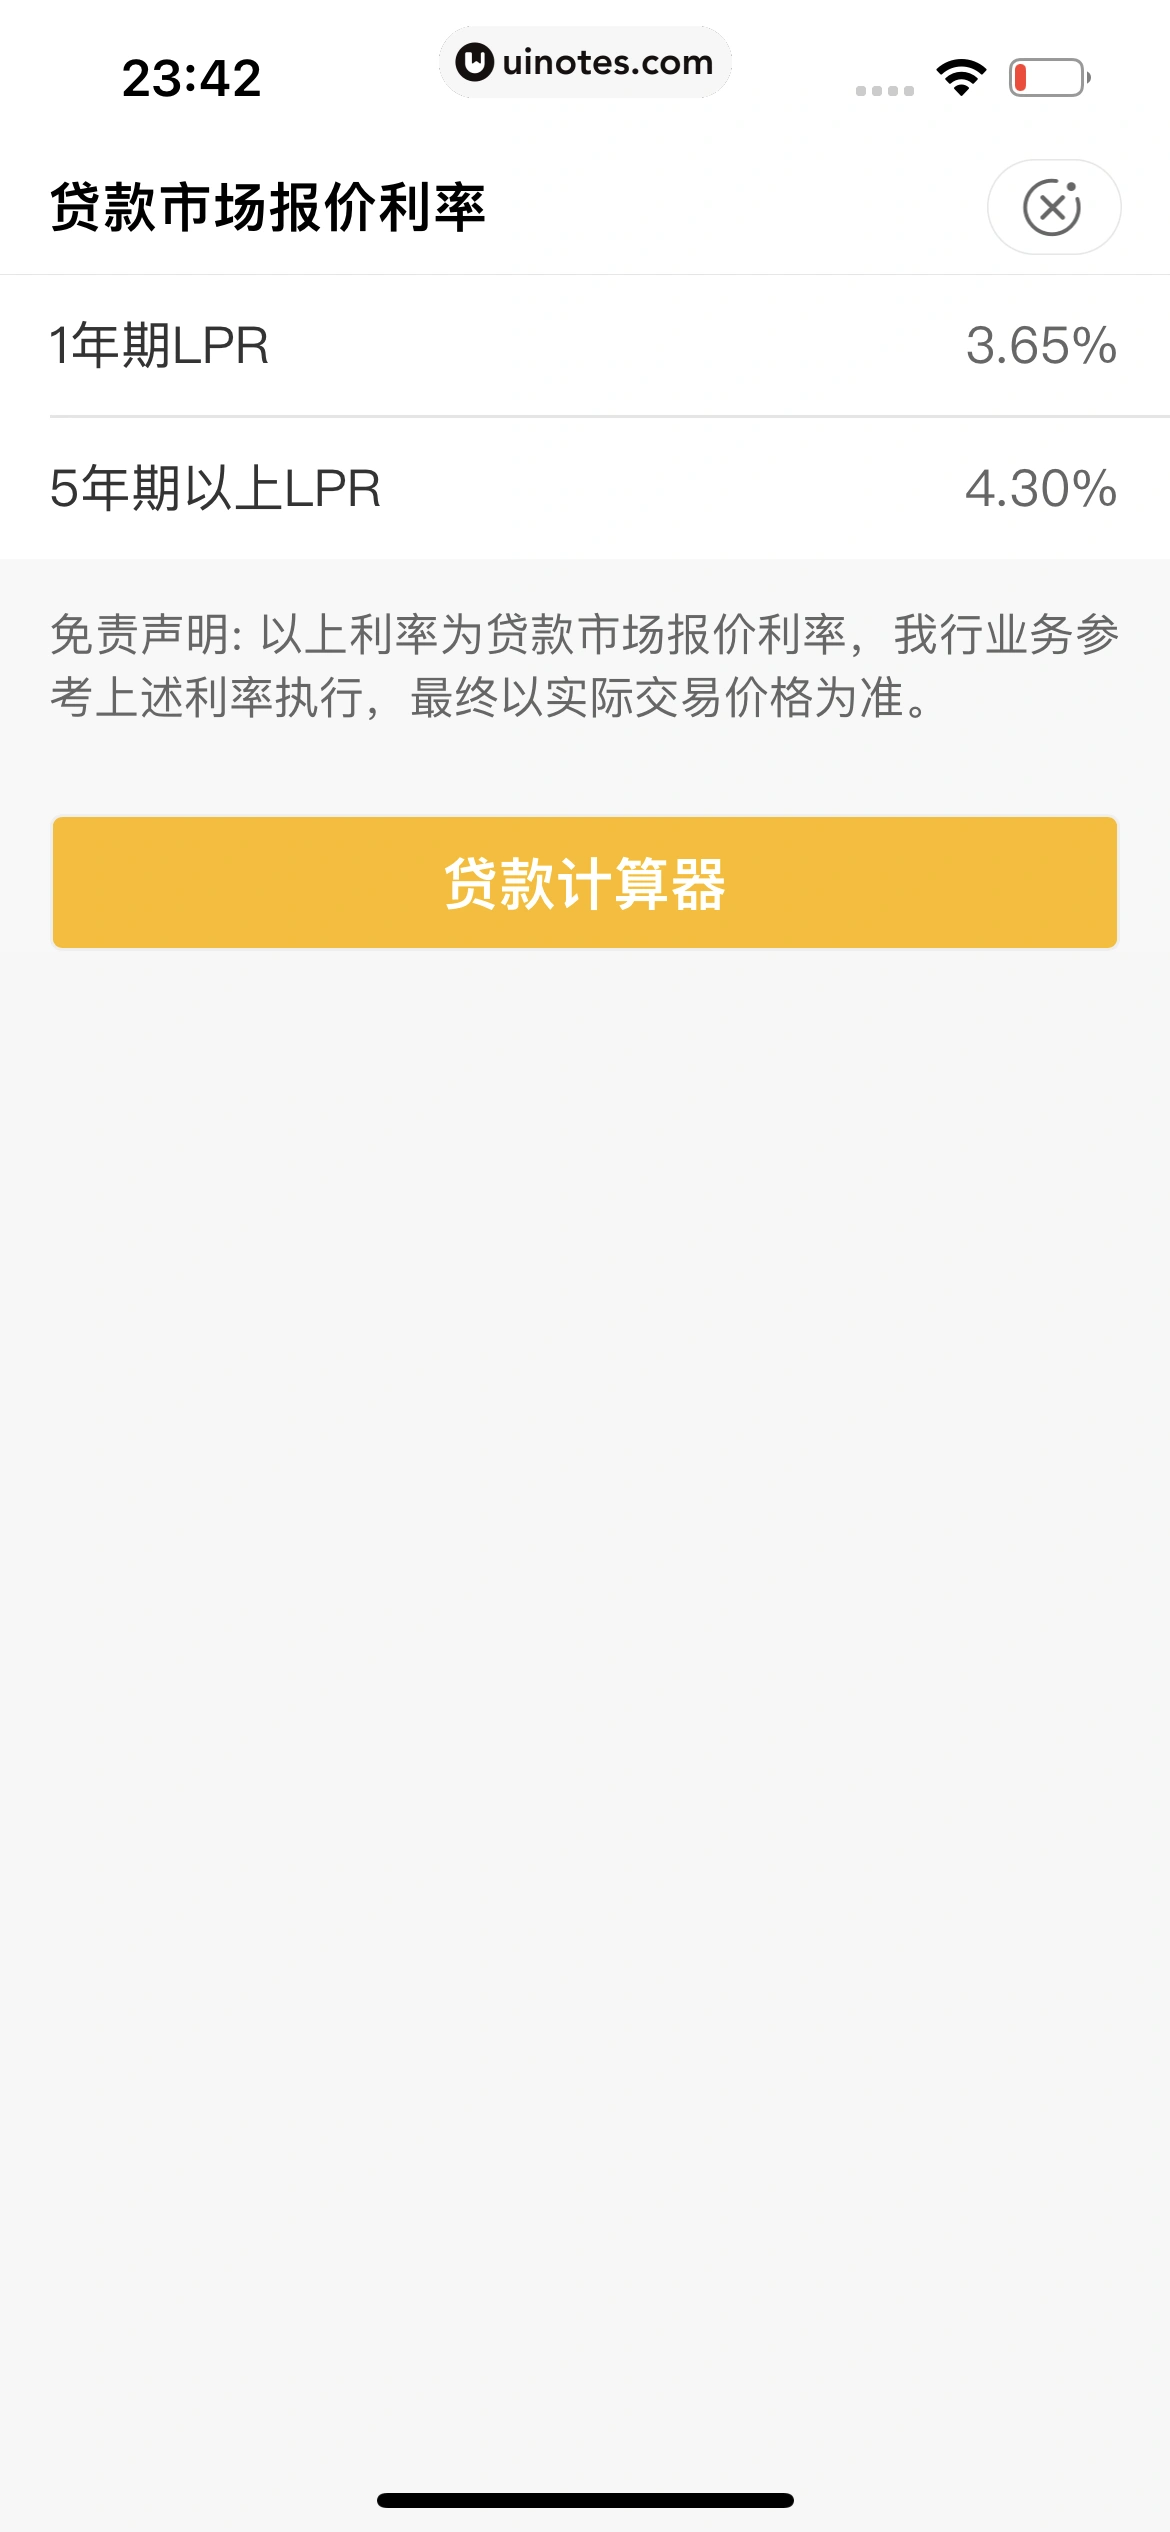 中国农业银行 App 截图 132 - UI Notes